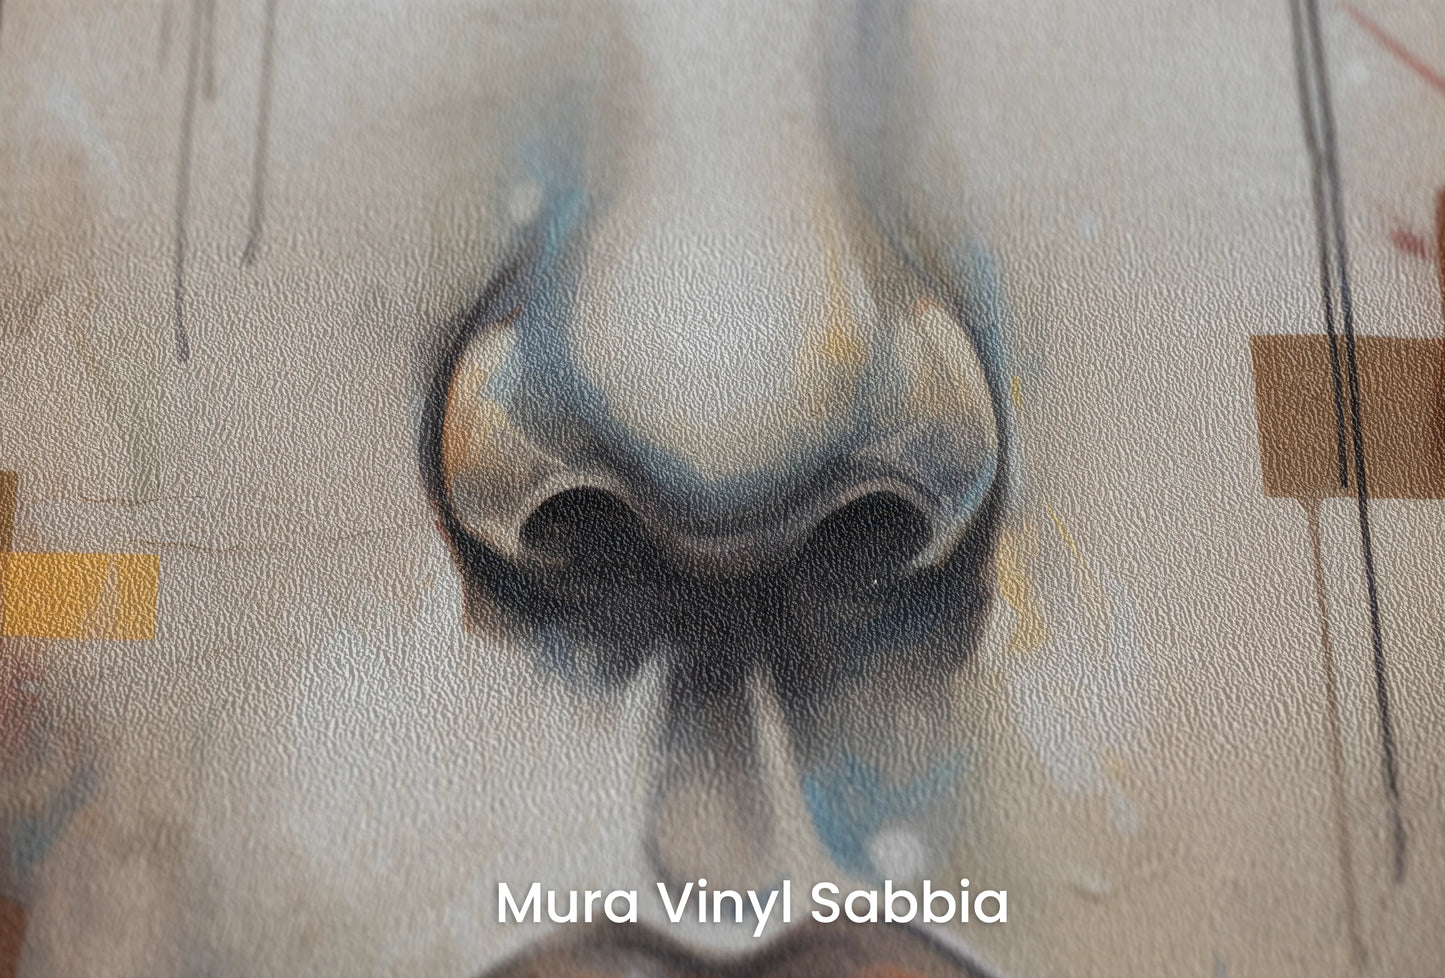 Zbliżenie na artystyczną fototapetę o nazwie Urban Reflections na podłożu Mura Vinyl Sabbia struktura grubego ziarna piasku.